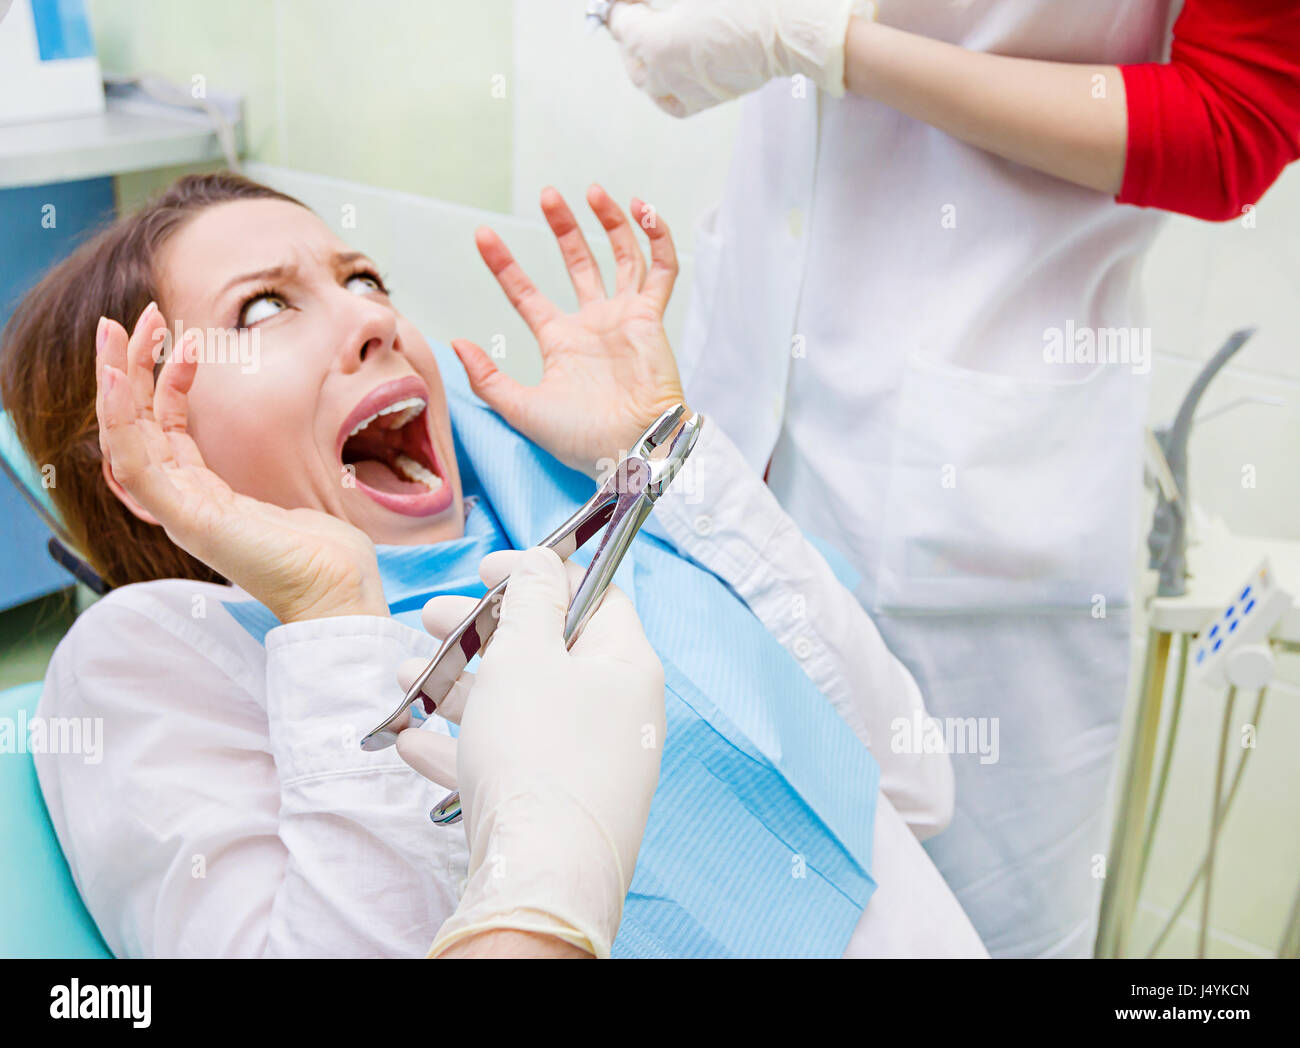 Closeup ritratto giovane ragazzina terrorizzata donna spaventata a visita dal dentista, ubicazione in cattedra, urlando, aperto bocca, non desidera procedura dentale la perforazione Foto Stock